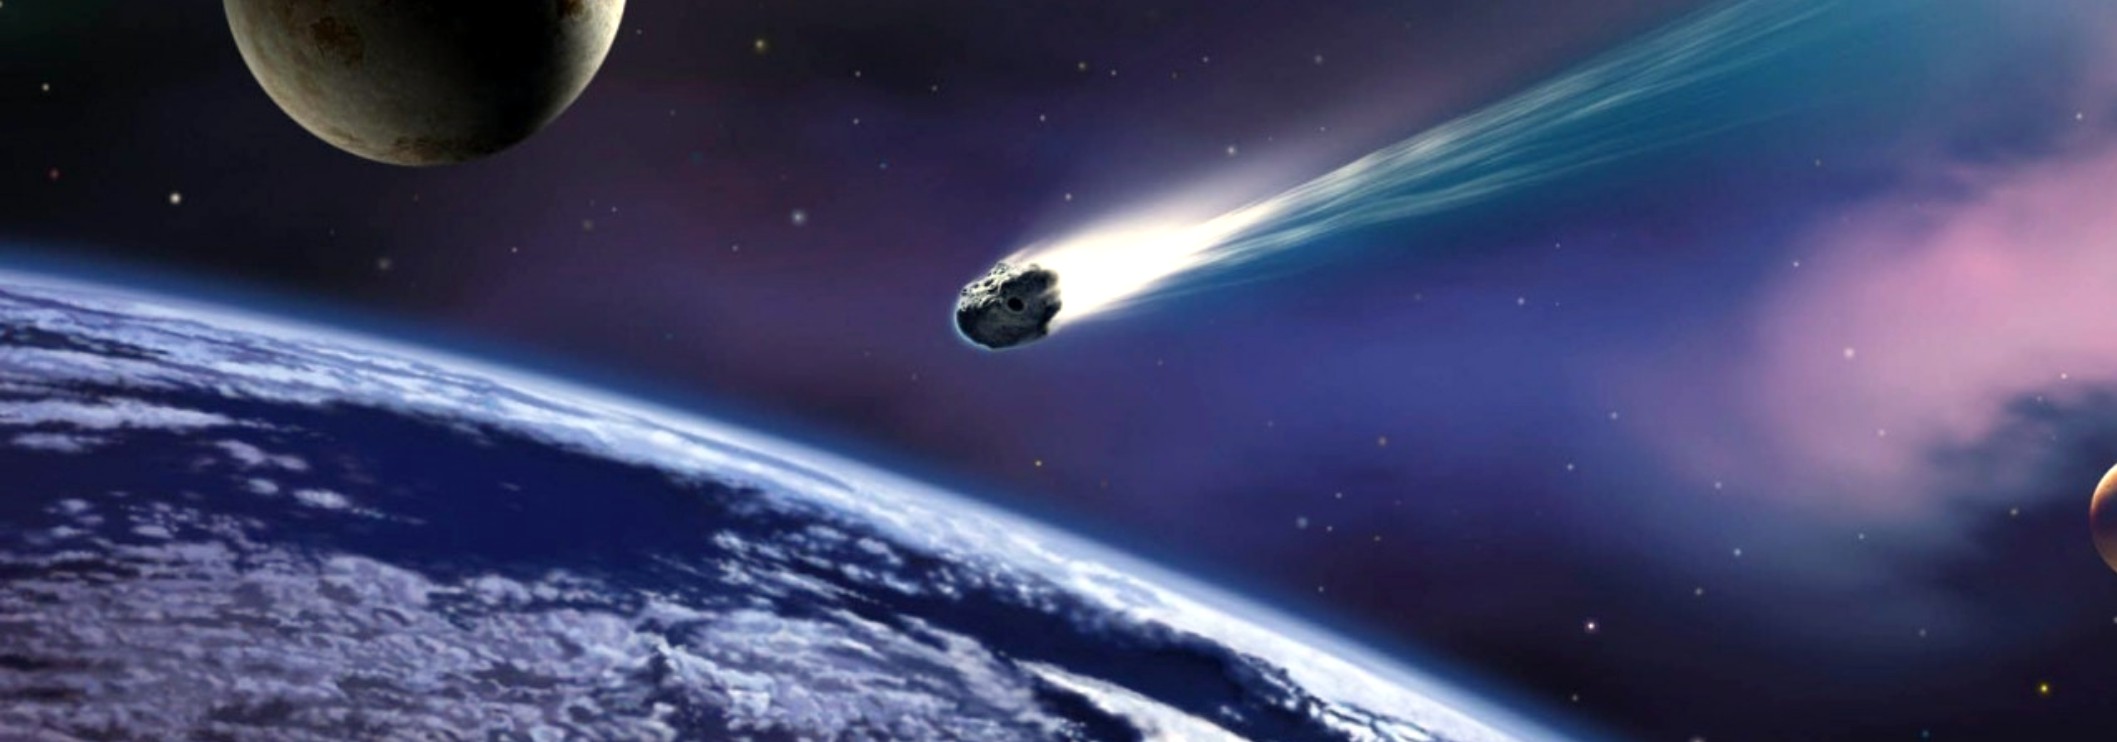 Resultado de imagen de meteorito real espacio